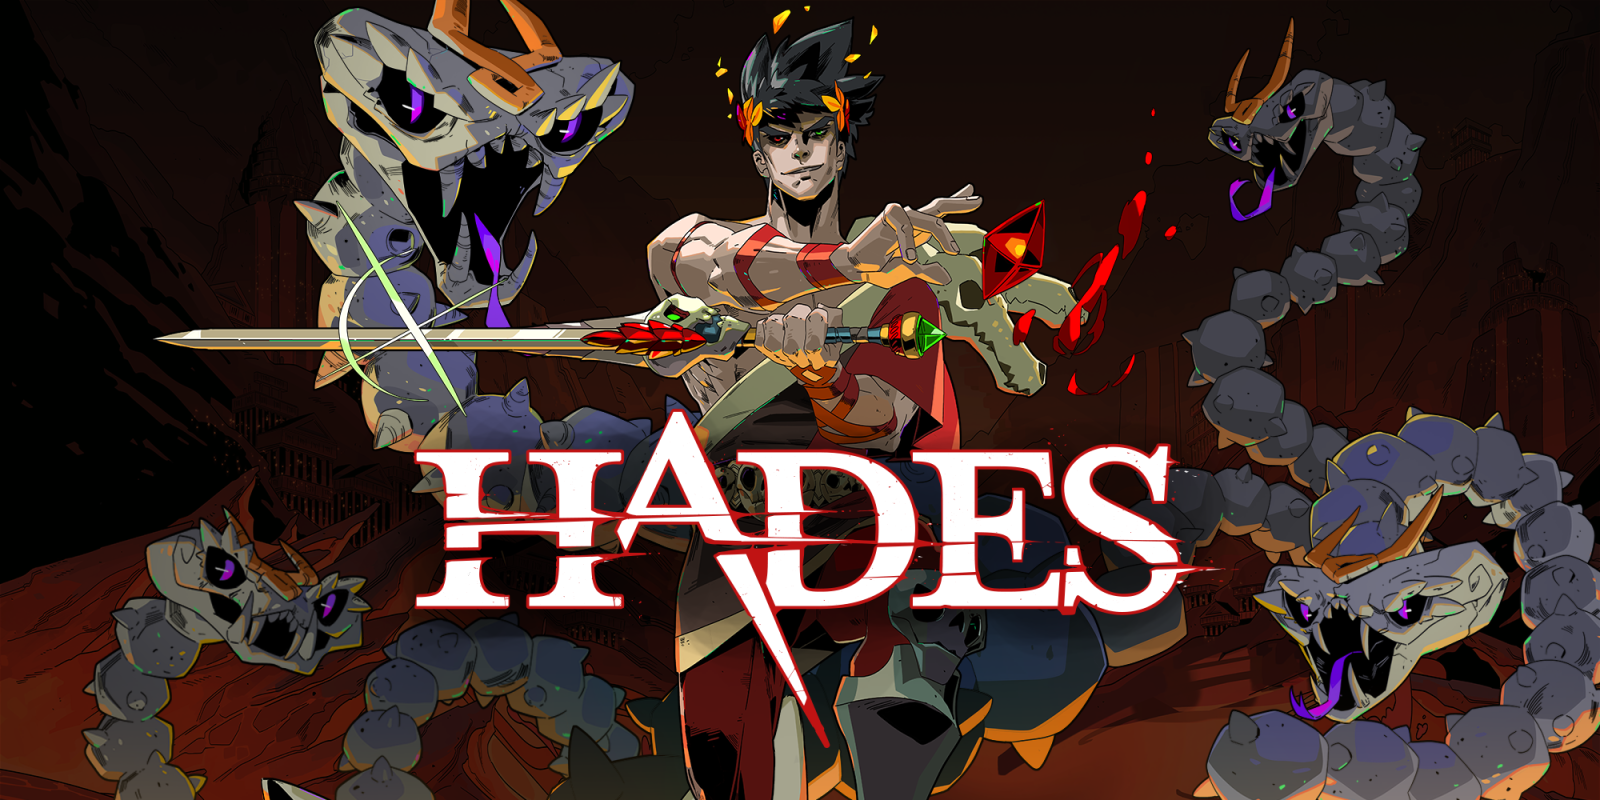 Si tu domines ces jeux vidéos, tu te sentiras le meilleur joueur de l'histoire - Hades